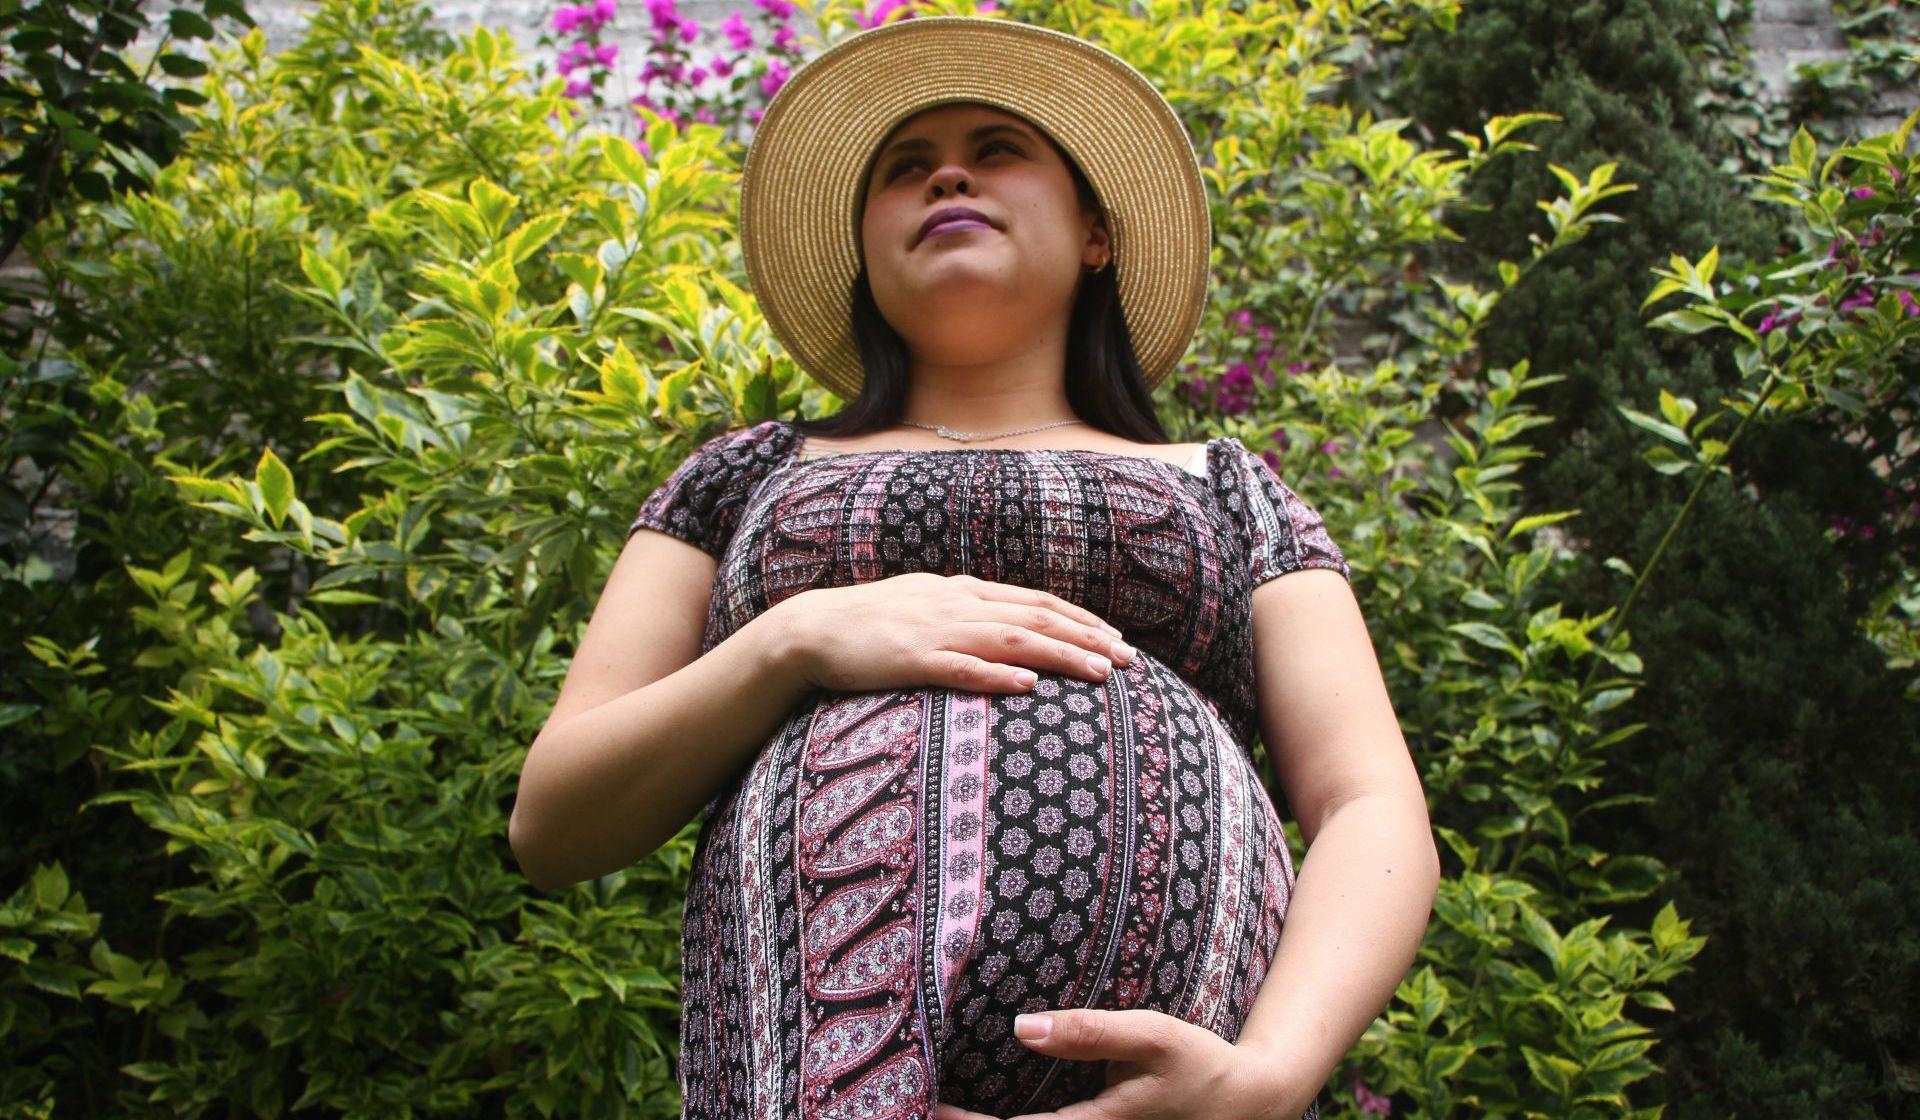 Mujeres despedidas por su embarazo tienen derecho a reinstalación y pago de salarios caídos: Corte